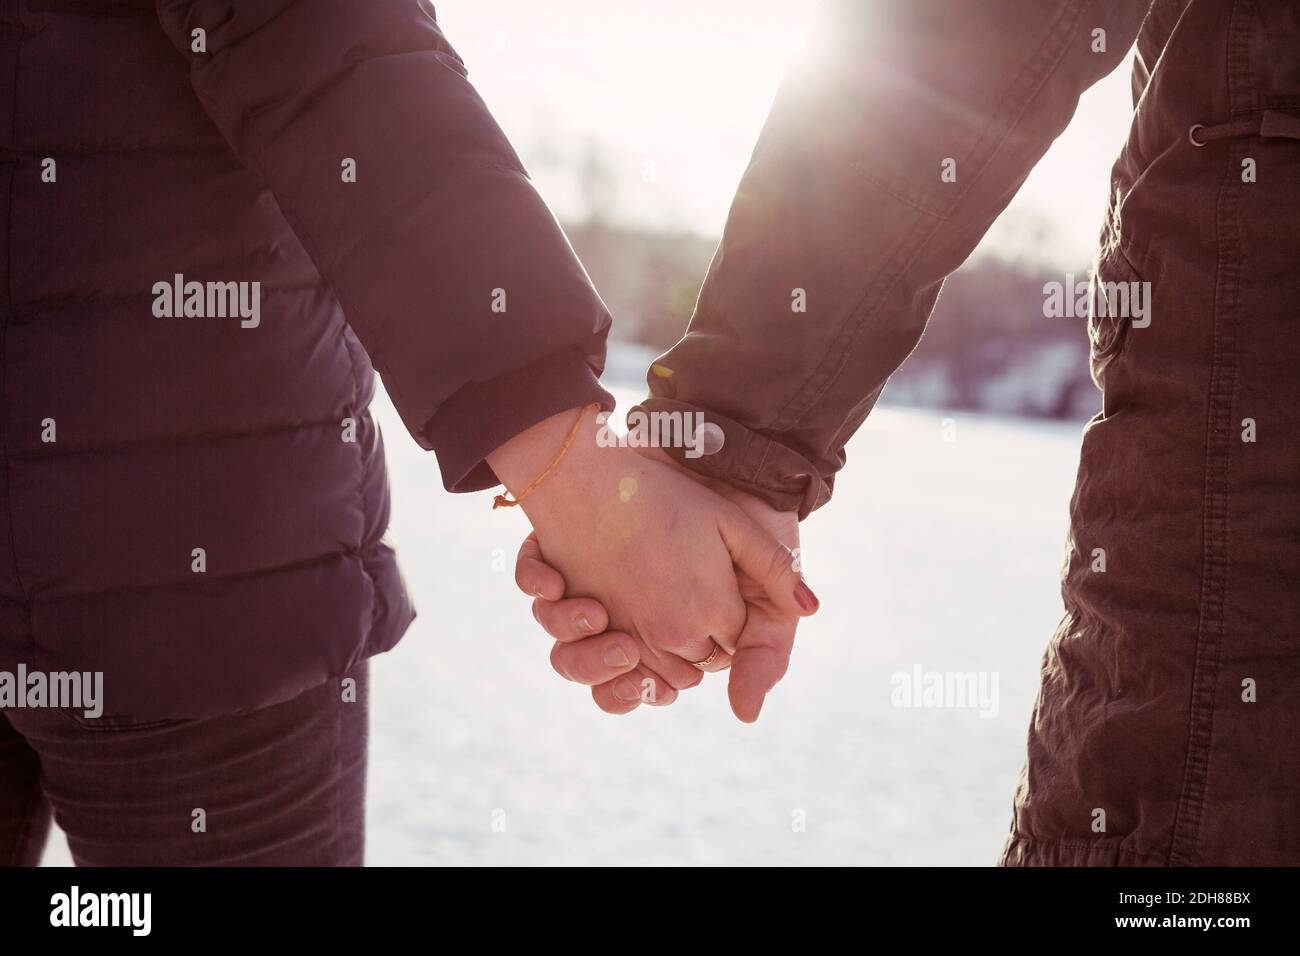 Imagen recortada hombre y mujer hiker sosteniendo las manos durante el invierno Foto de stock